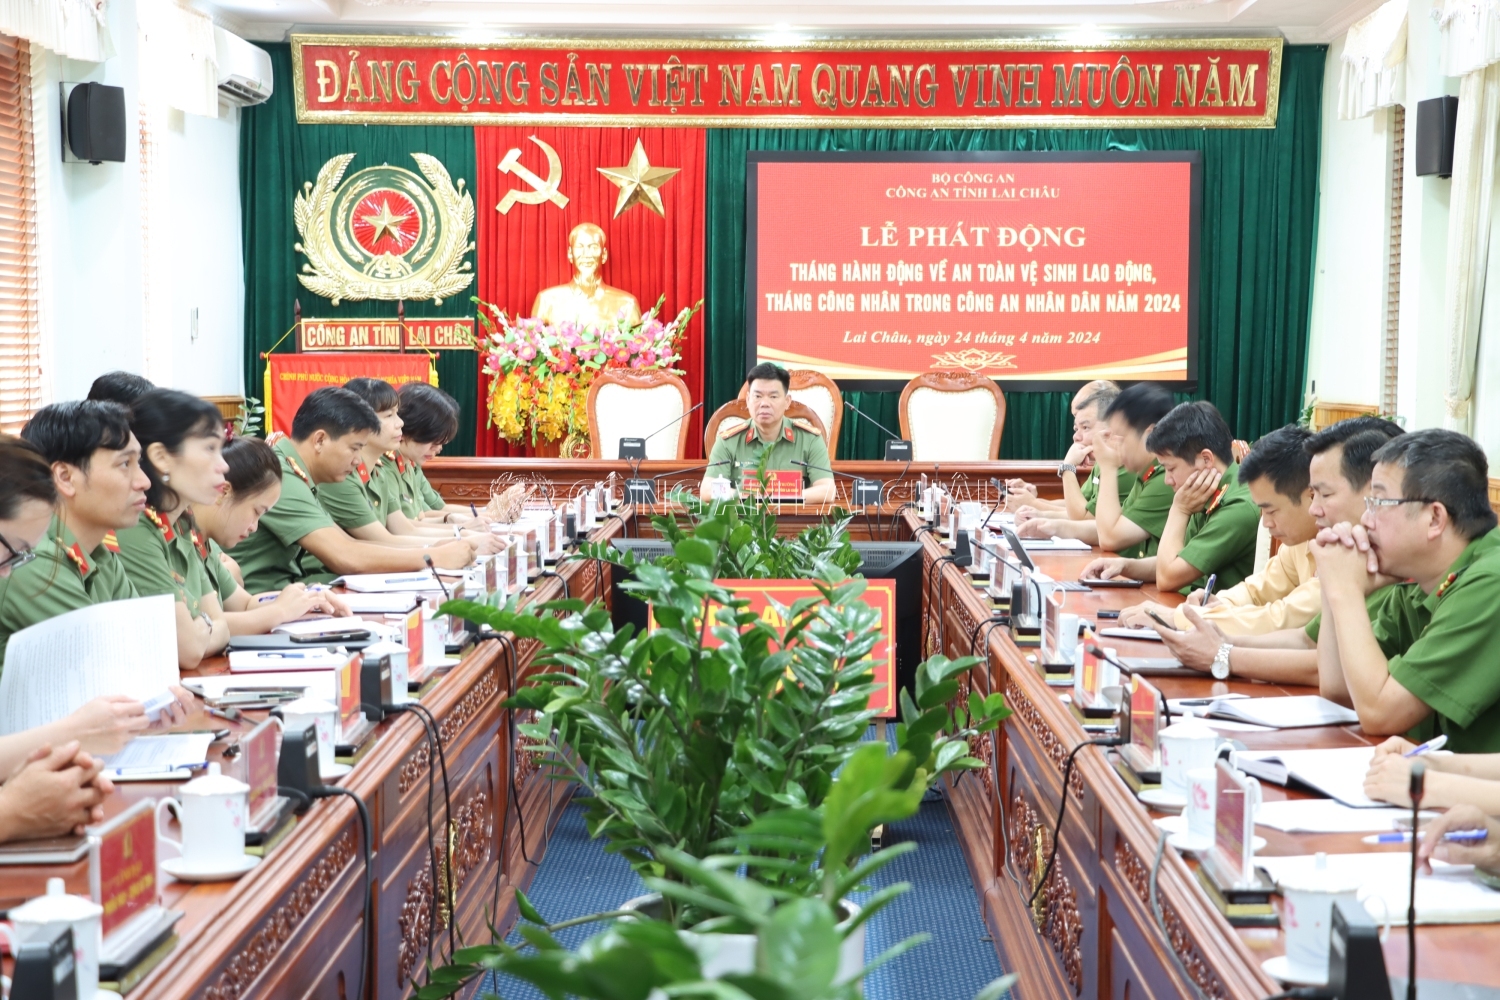 Đại tá Tao Văn Trường - Phó giám đốc Công an tỉnh Lai Châu và đại diện lãnh đạo một số phòng chức năng Công an tỉnh dự  lễ phát động tại điểm cầu Công an tỉnh